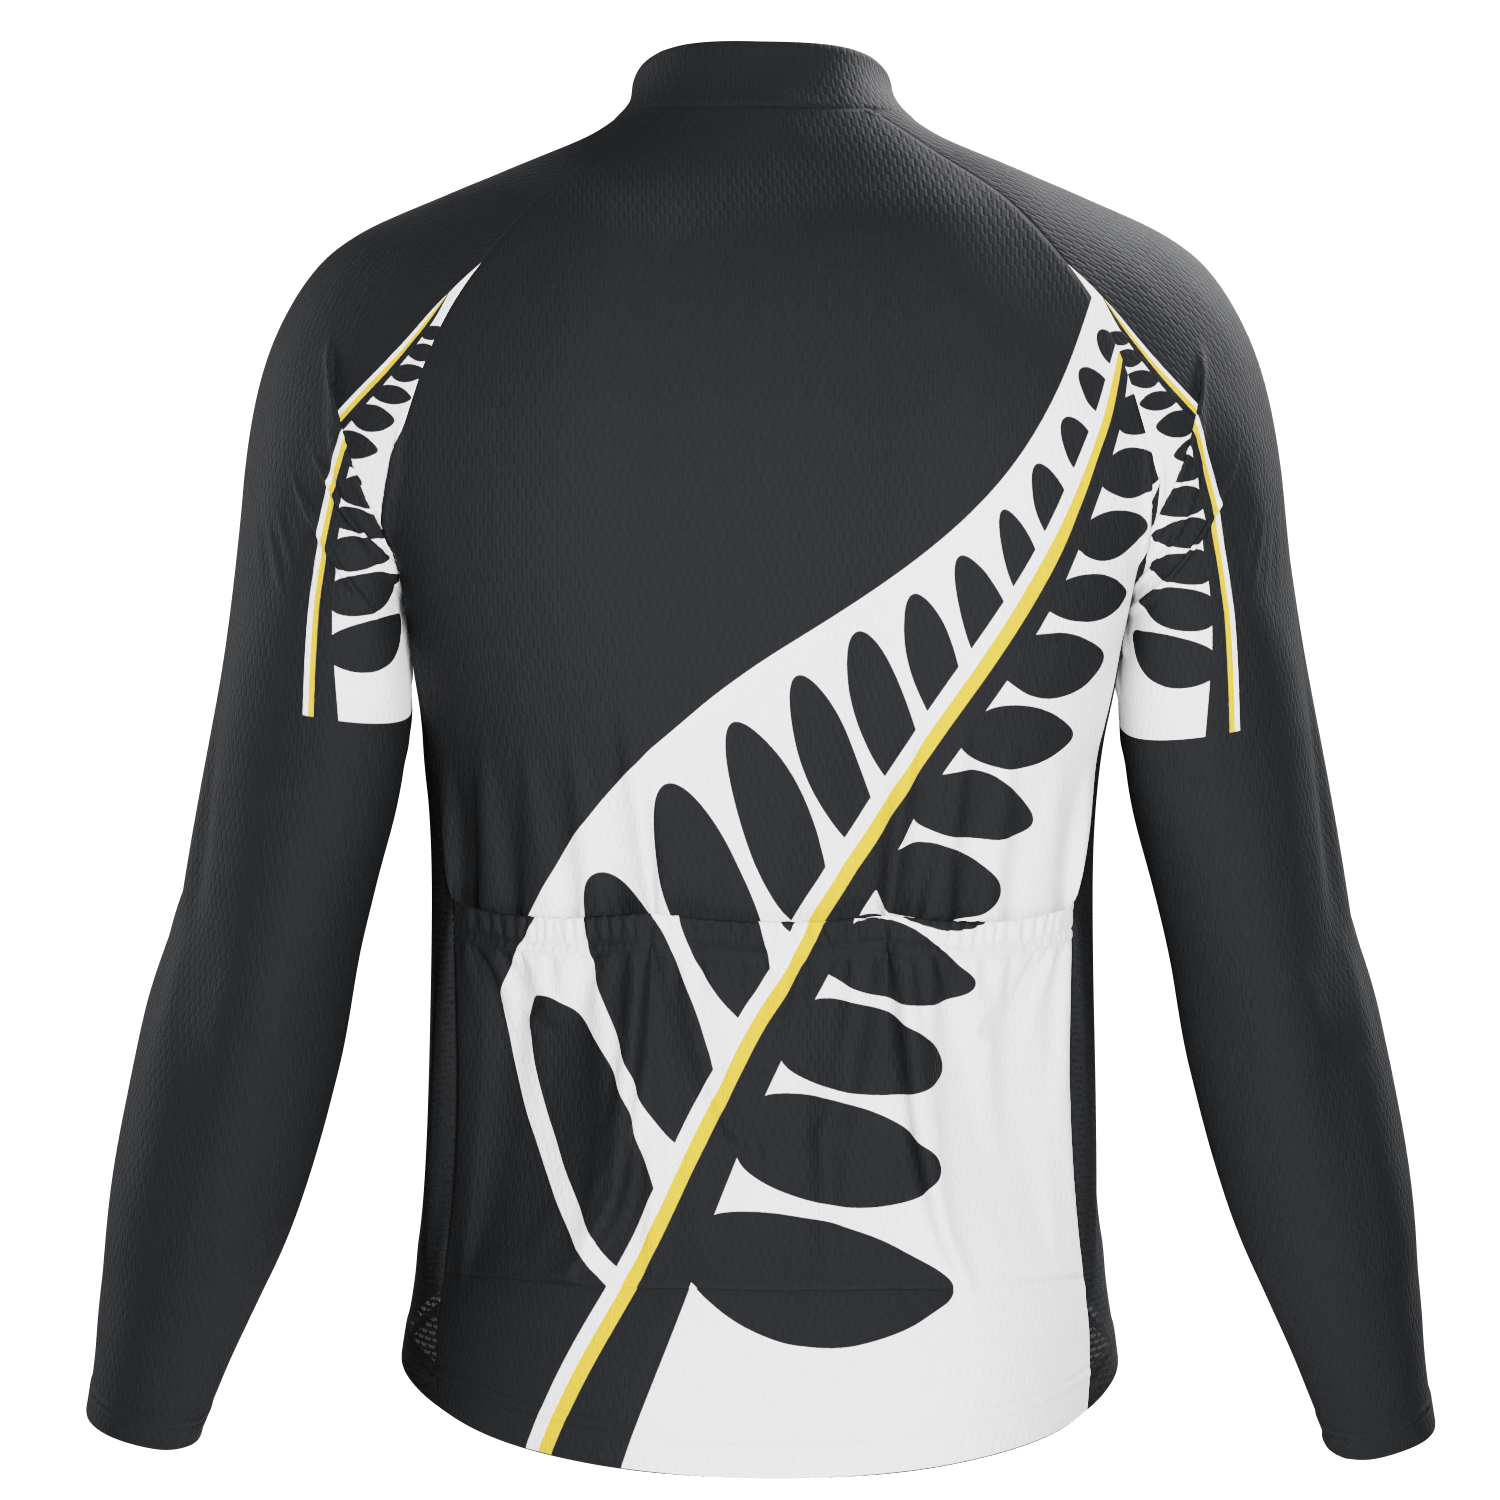 Men's New Zealand Silver Fern Long Sleeve Cycling Jersey